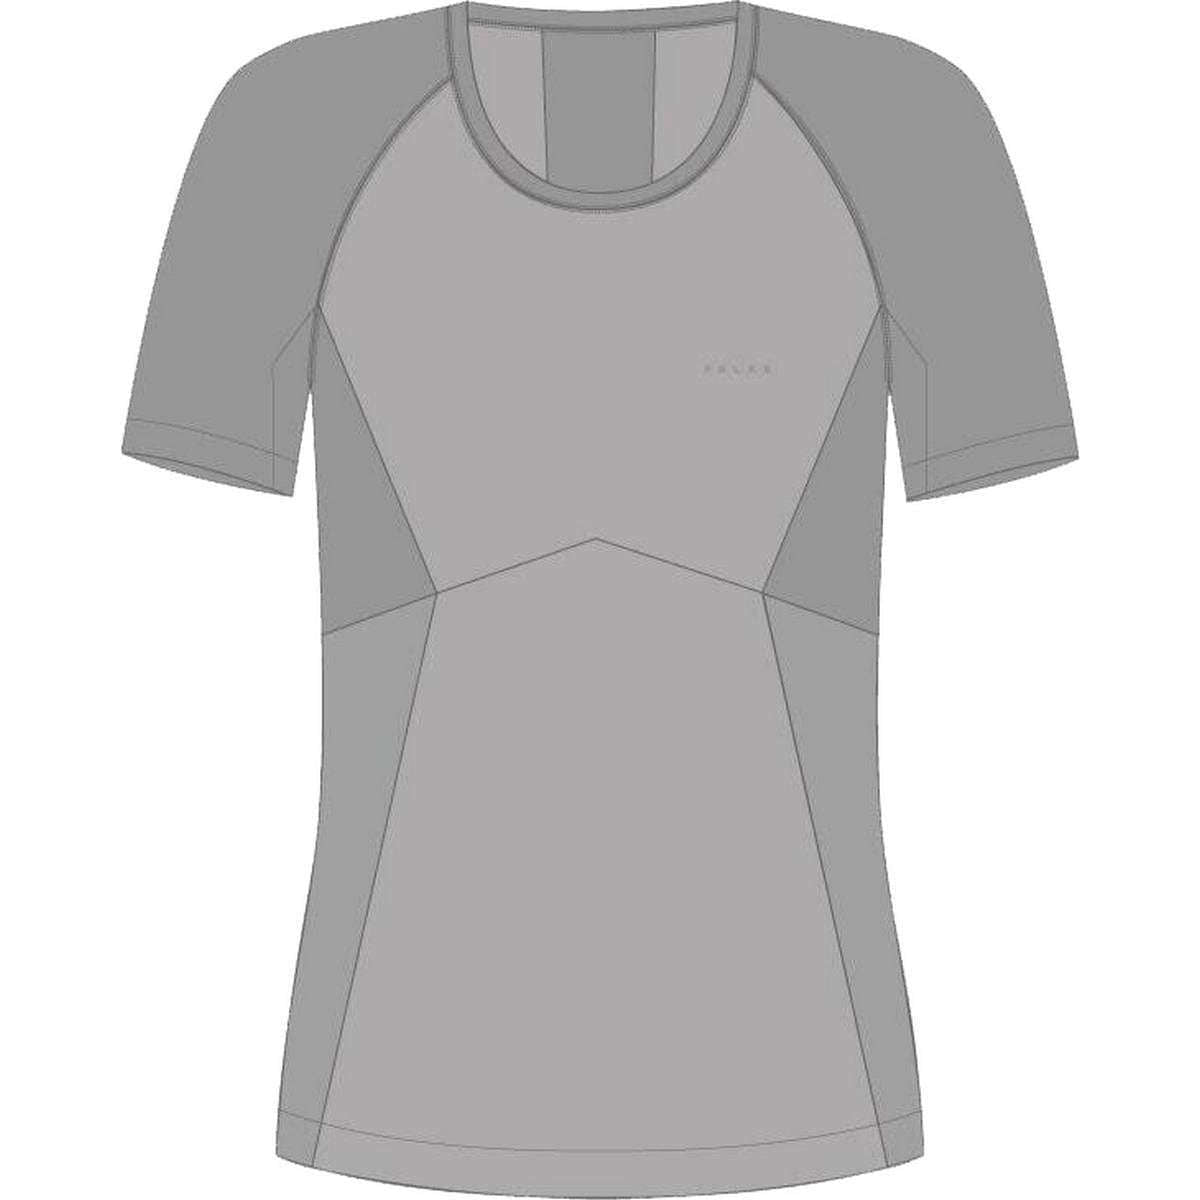 Falke Wool Tech Light Short Sleeved Sports Shirt - Grey Heather